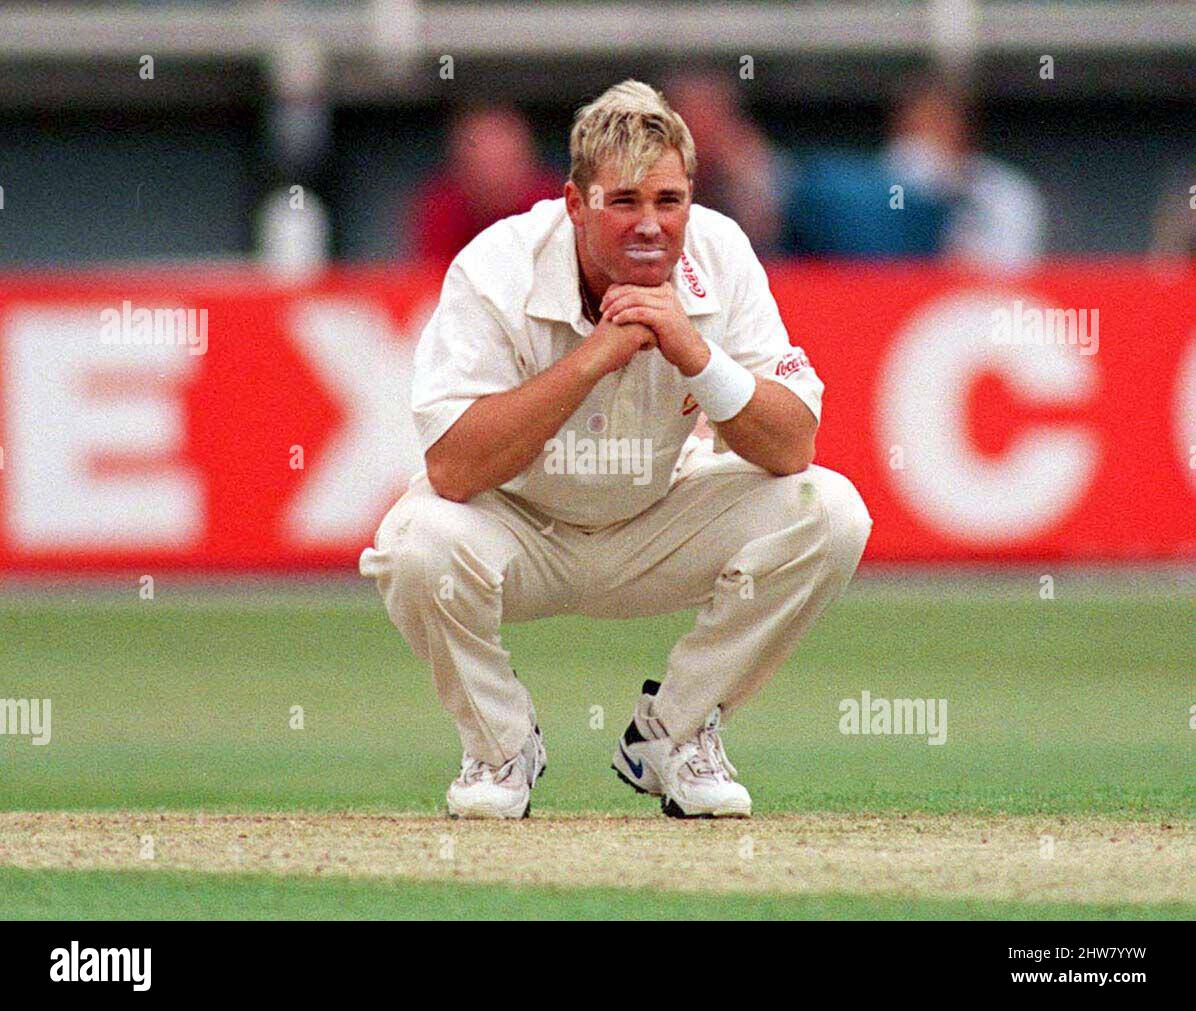 Foto di archivio datata 05-06-1997 di Shane Warne in Australia. L'ex cricketer australiano Shane Warne è morto all'età di 52 anni, la sua società di gestione MPC Entertainment ha annunciato in una dichiarazione. Data di emissione: Venerdì 4 marzo 2022. Foto Stock